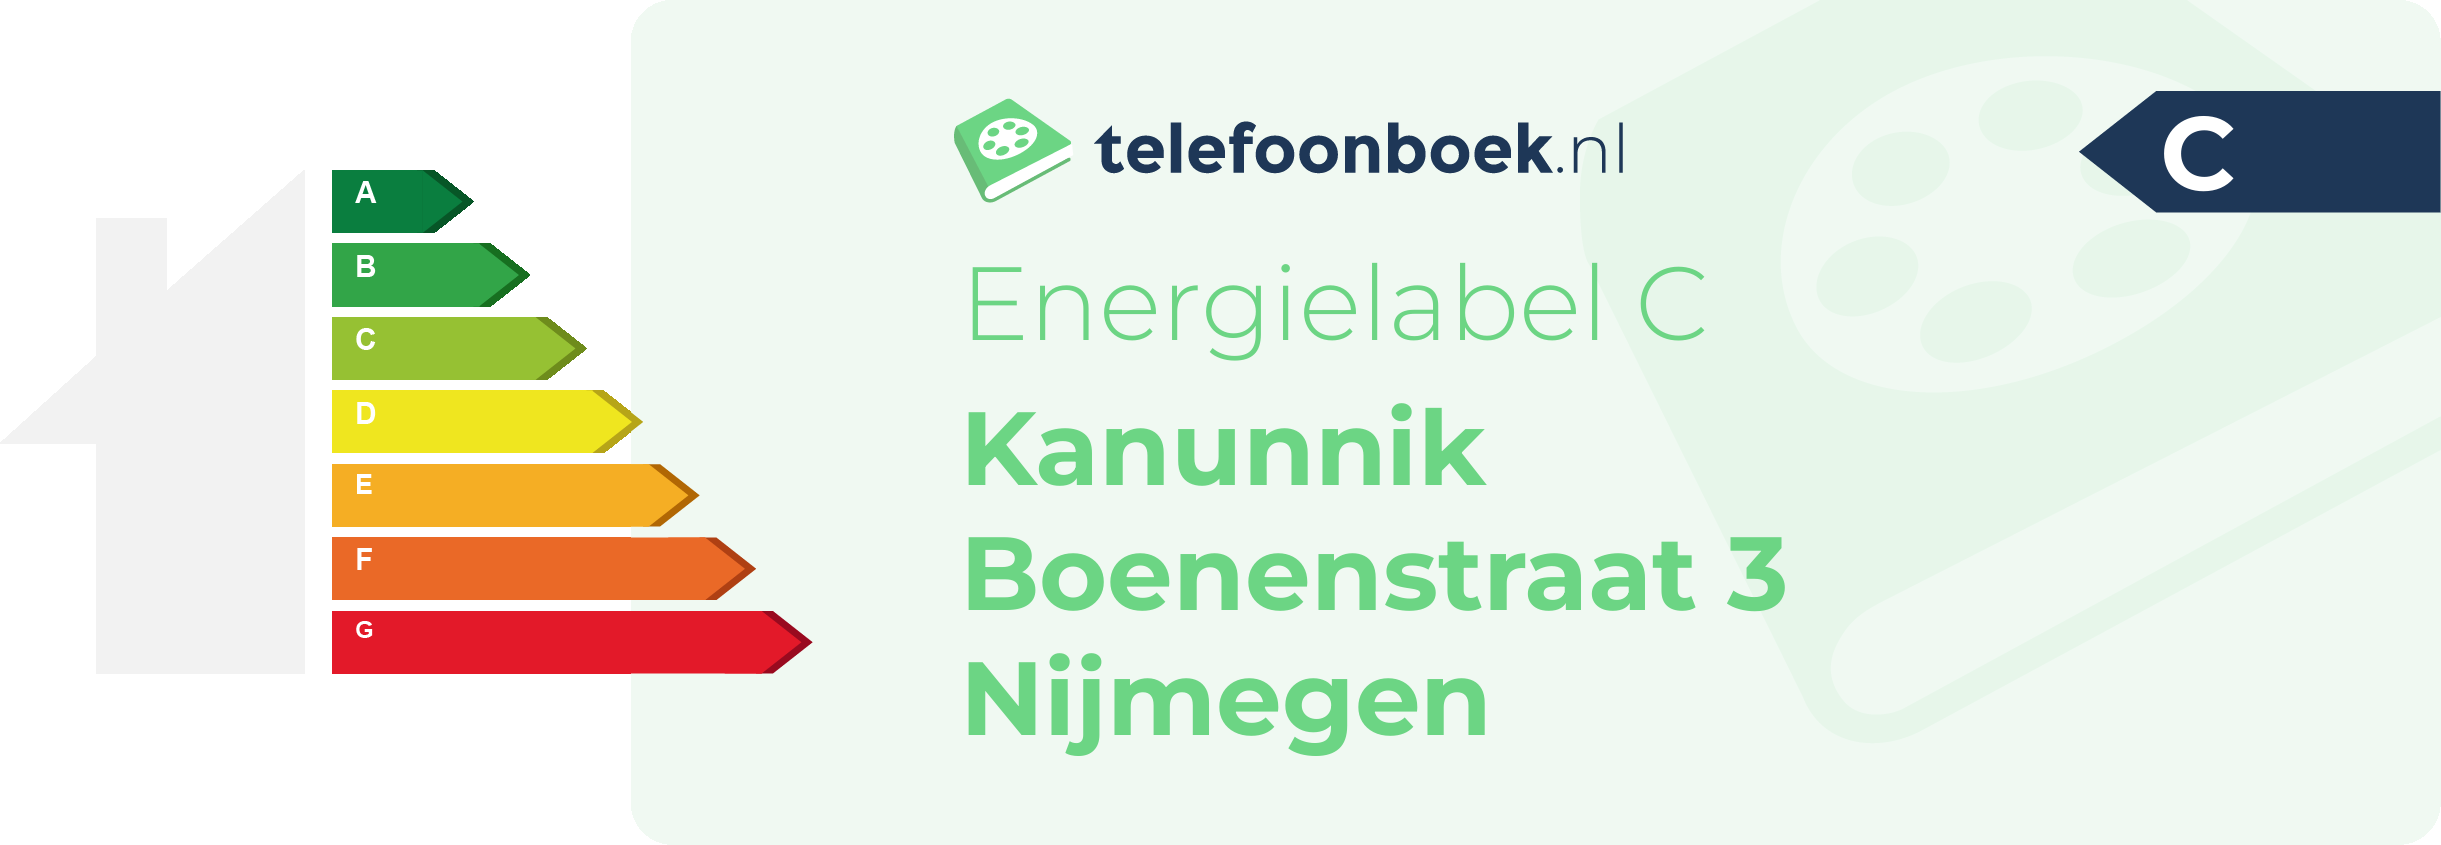 Energielabel Kanunnik Boenenstraat 3 Nijmegen